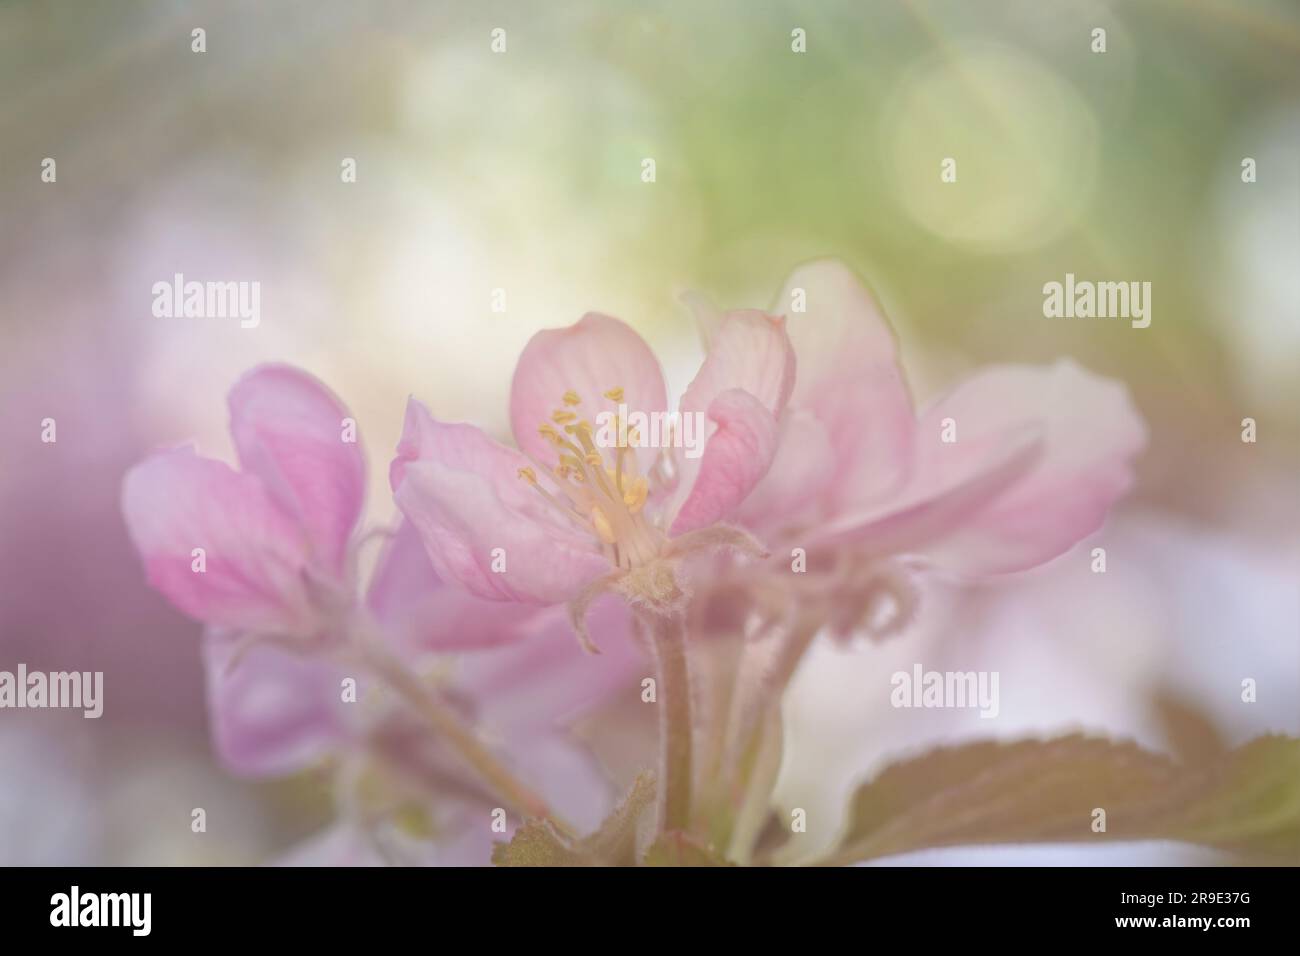 Image rêveuse de fleurs de pomme délicates, rose clair au printemps Banque D'Images